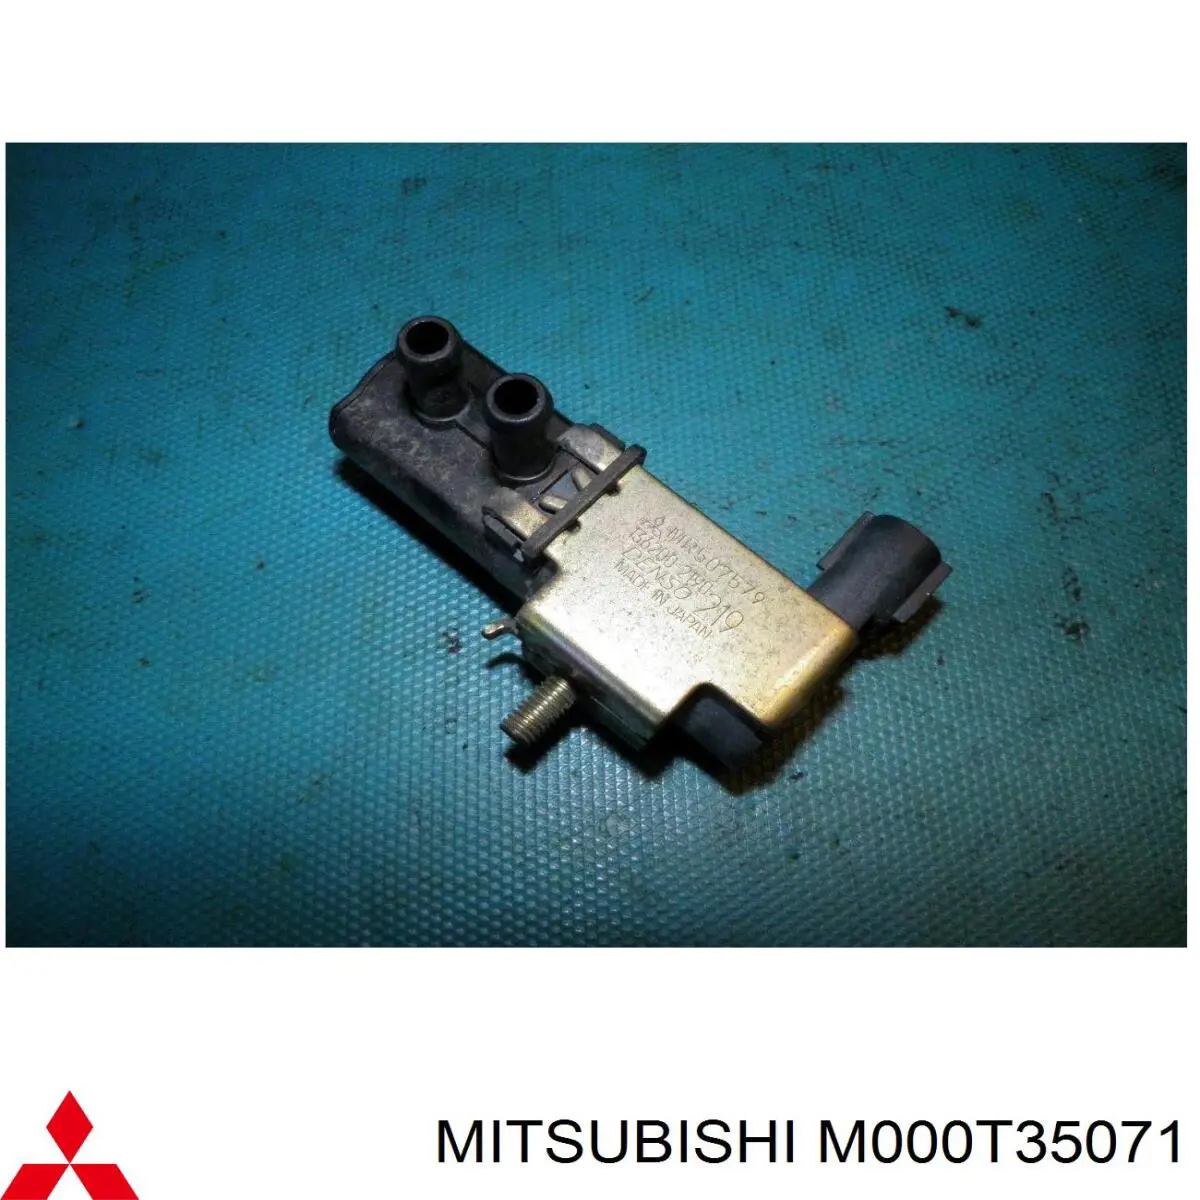 M000T35071 Mitsubishi motor de arranque